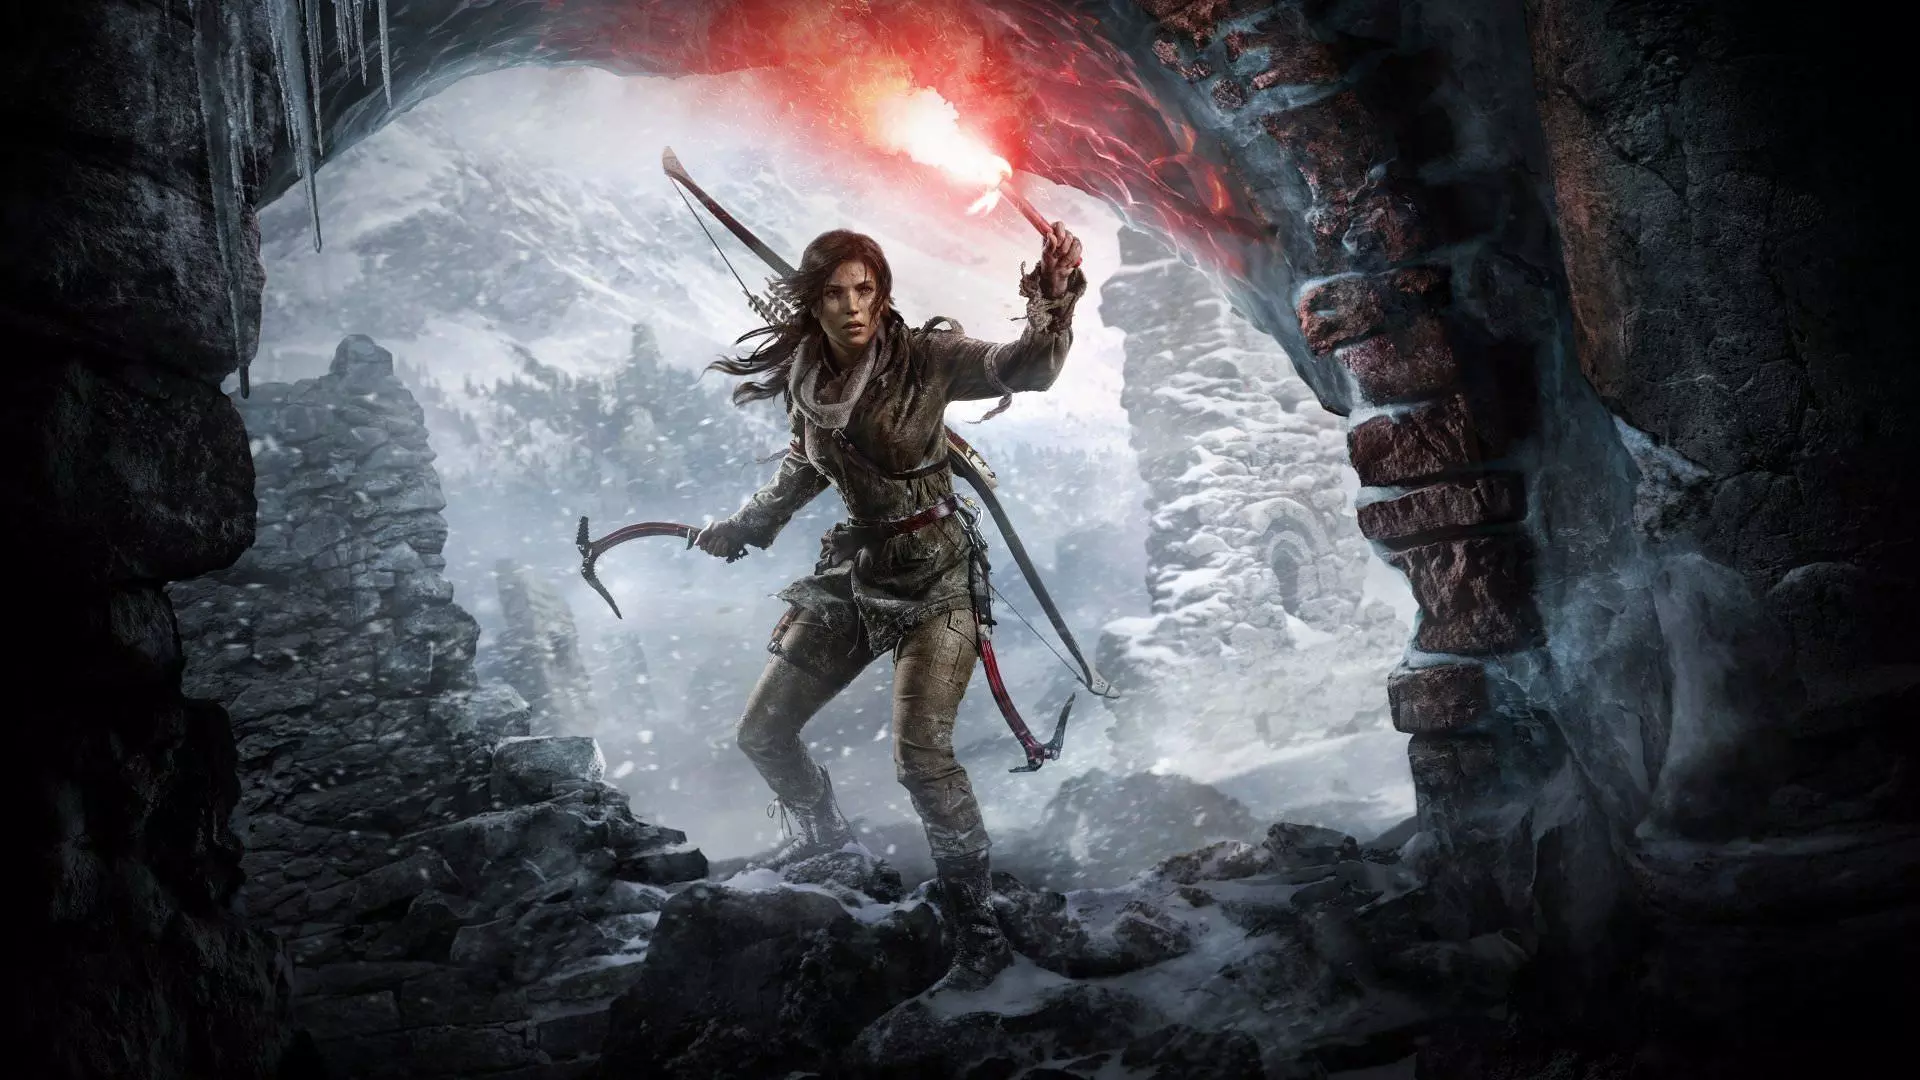 بازی Rise of the Tomb Raider و لارا کرافت از منبع نور قرمز در ورودی مقبره محافظت می کنند.